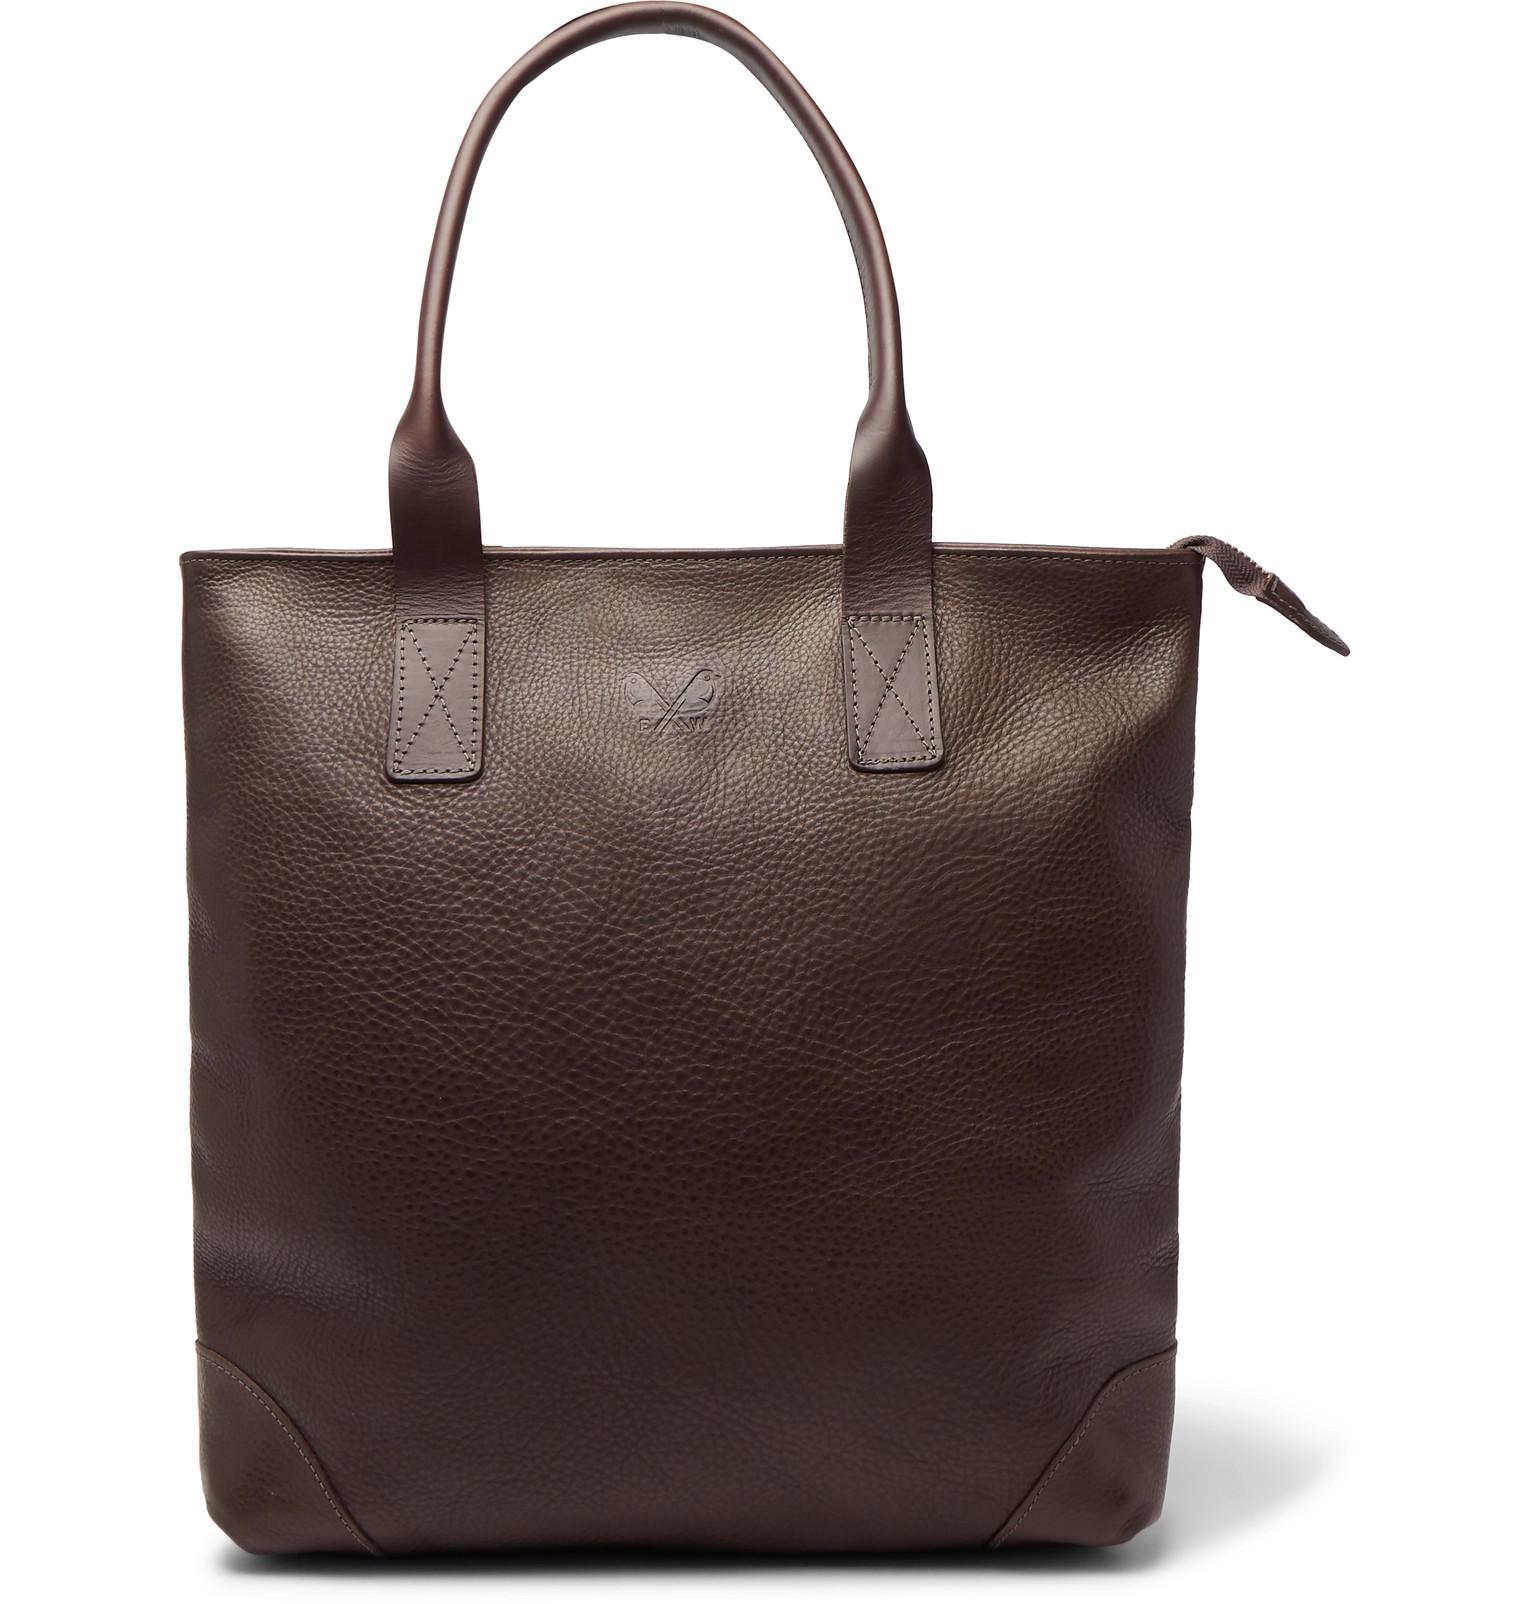 Bennett Winch Full-grain Leather Tote Bag in Brown for Men - Lyst